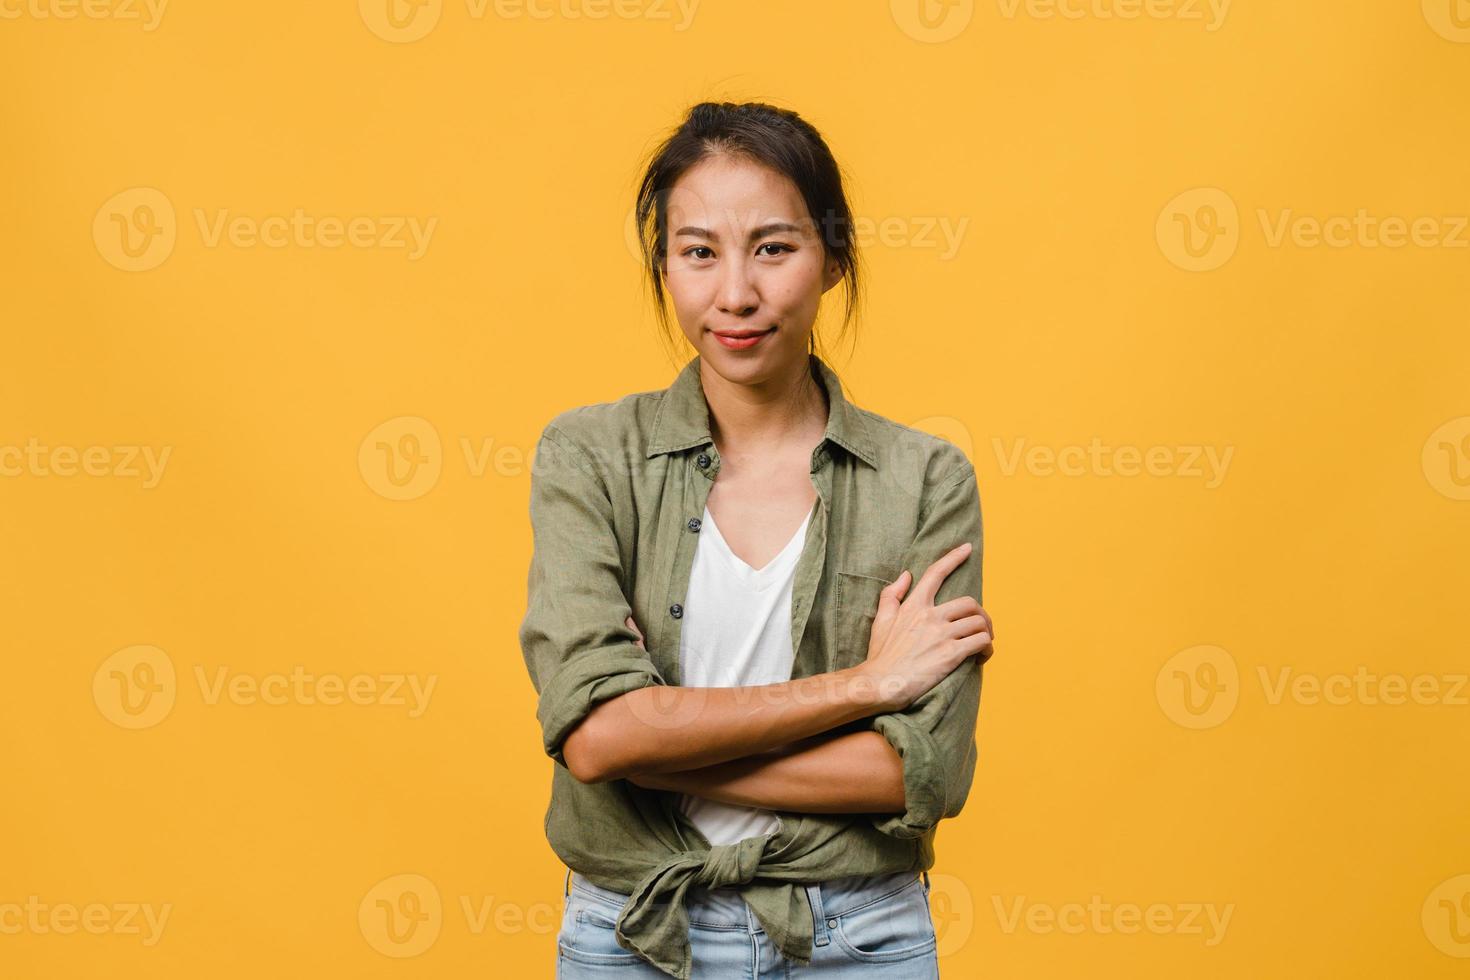 porträtt av ung asiatisk dam med positivt uttryck, korsade armar, le brett, klädd i vardagskläder och titta på kameran över gul bakgrund. glad förtjusande glad kvinna jublar över framgång. foto